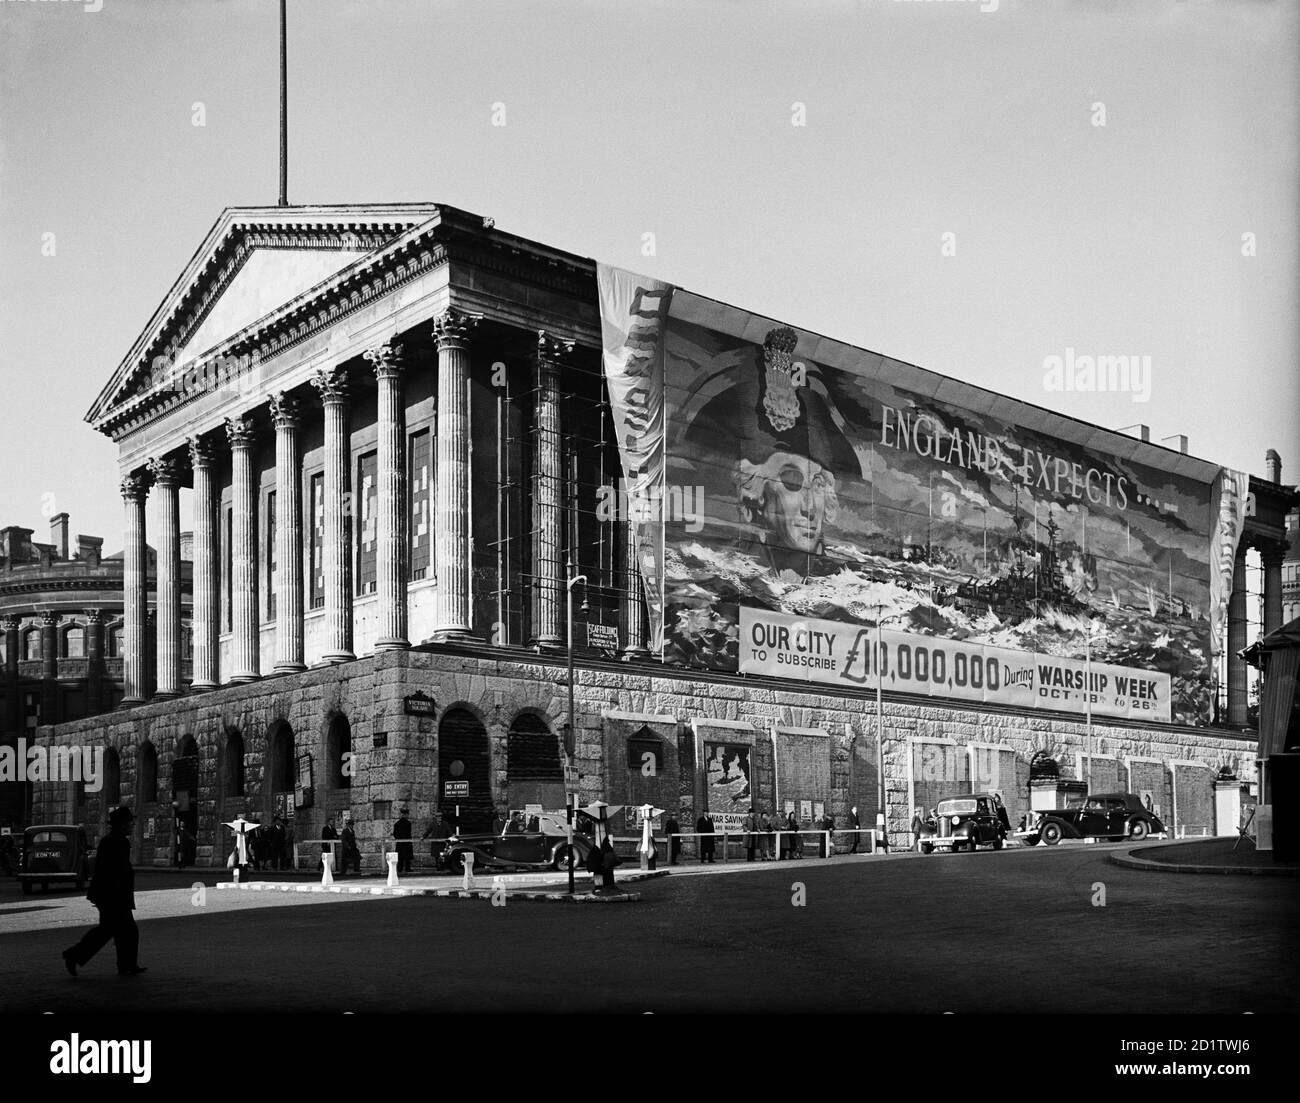 MUNICIPIO, Birmingham, West Midlands. Vista del Municipio con banner che copre un lato, promuovendo la settimana della nave da guerra, 18 - 26 ottobre. 'L'Inghilterra si aspetta che la nostra città si iscrivi a £10,000,000...' Fotografato da G B Mason nel 1941. Foto Stock